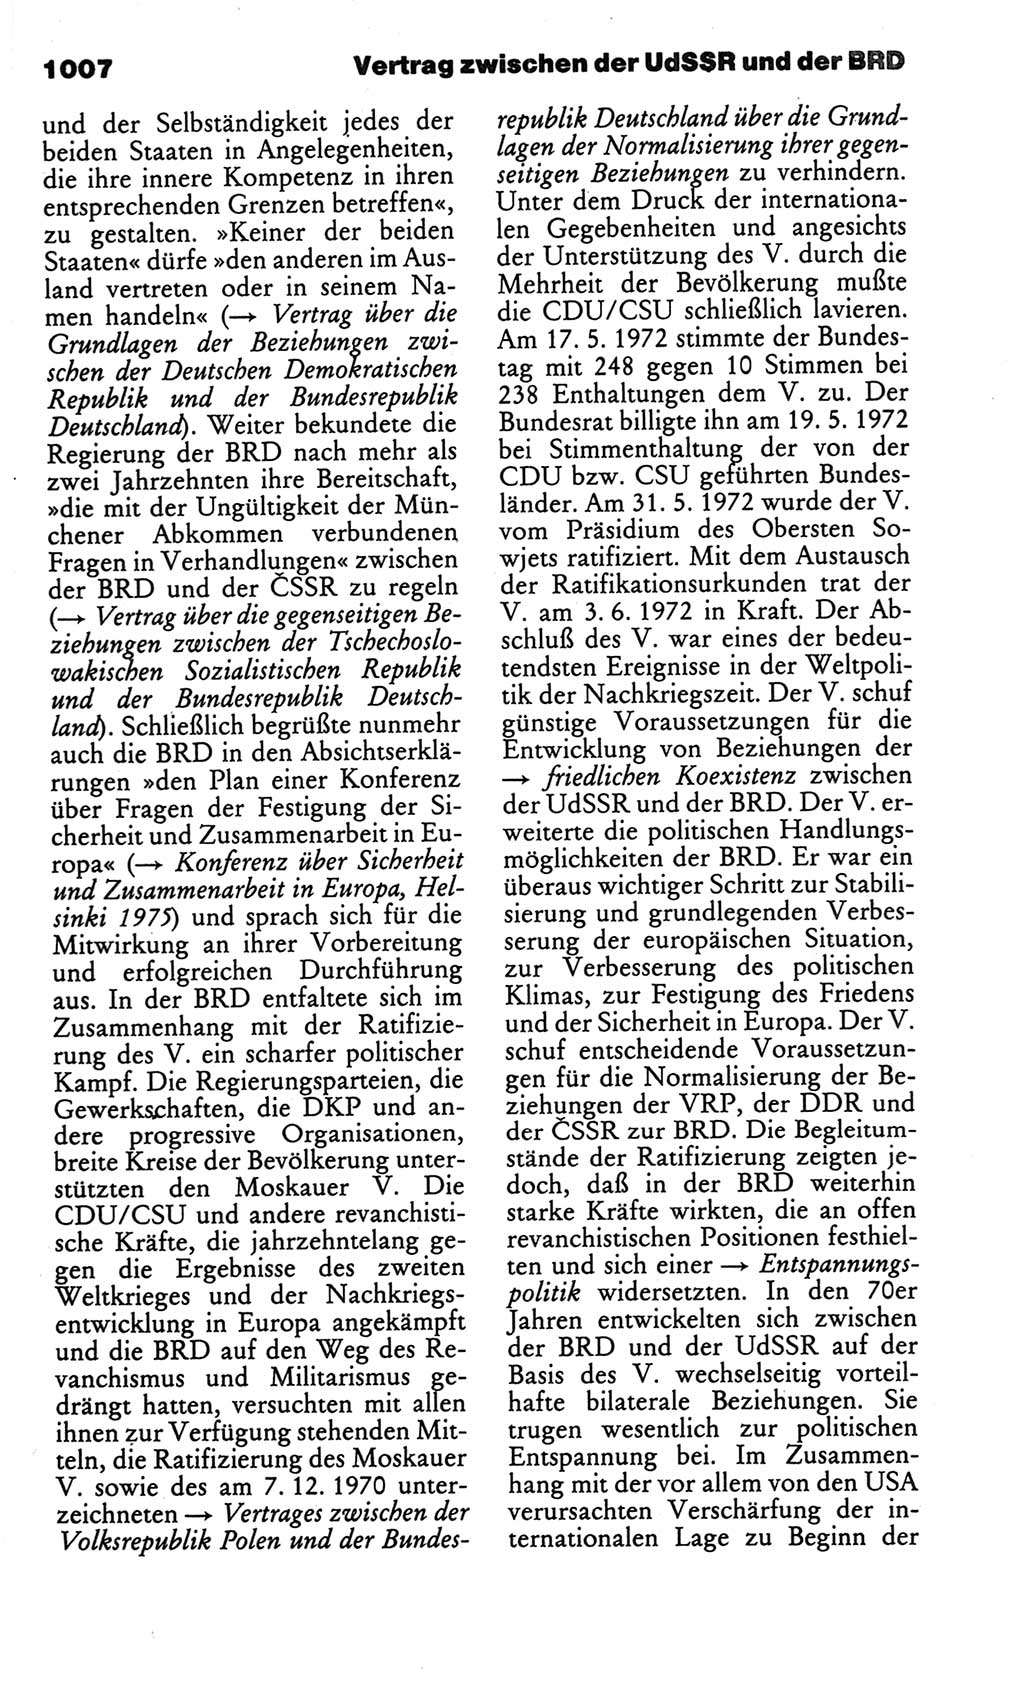 Kleines politisches Wörterbuch [Deutsche Demokratische Republik (DDR)] 1986, Seite 1007 (Kl. pol. Wb. DDR 1986, S. 1007)